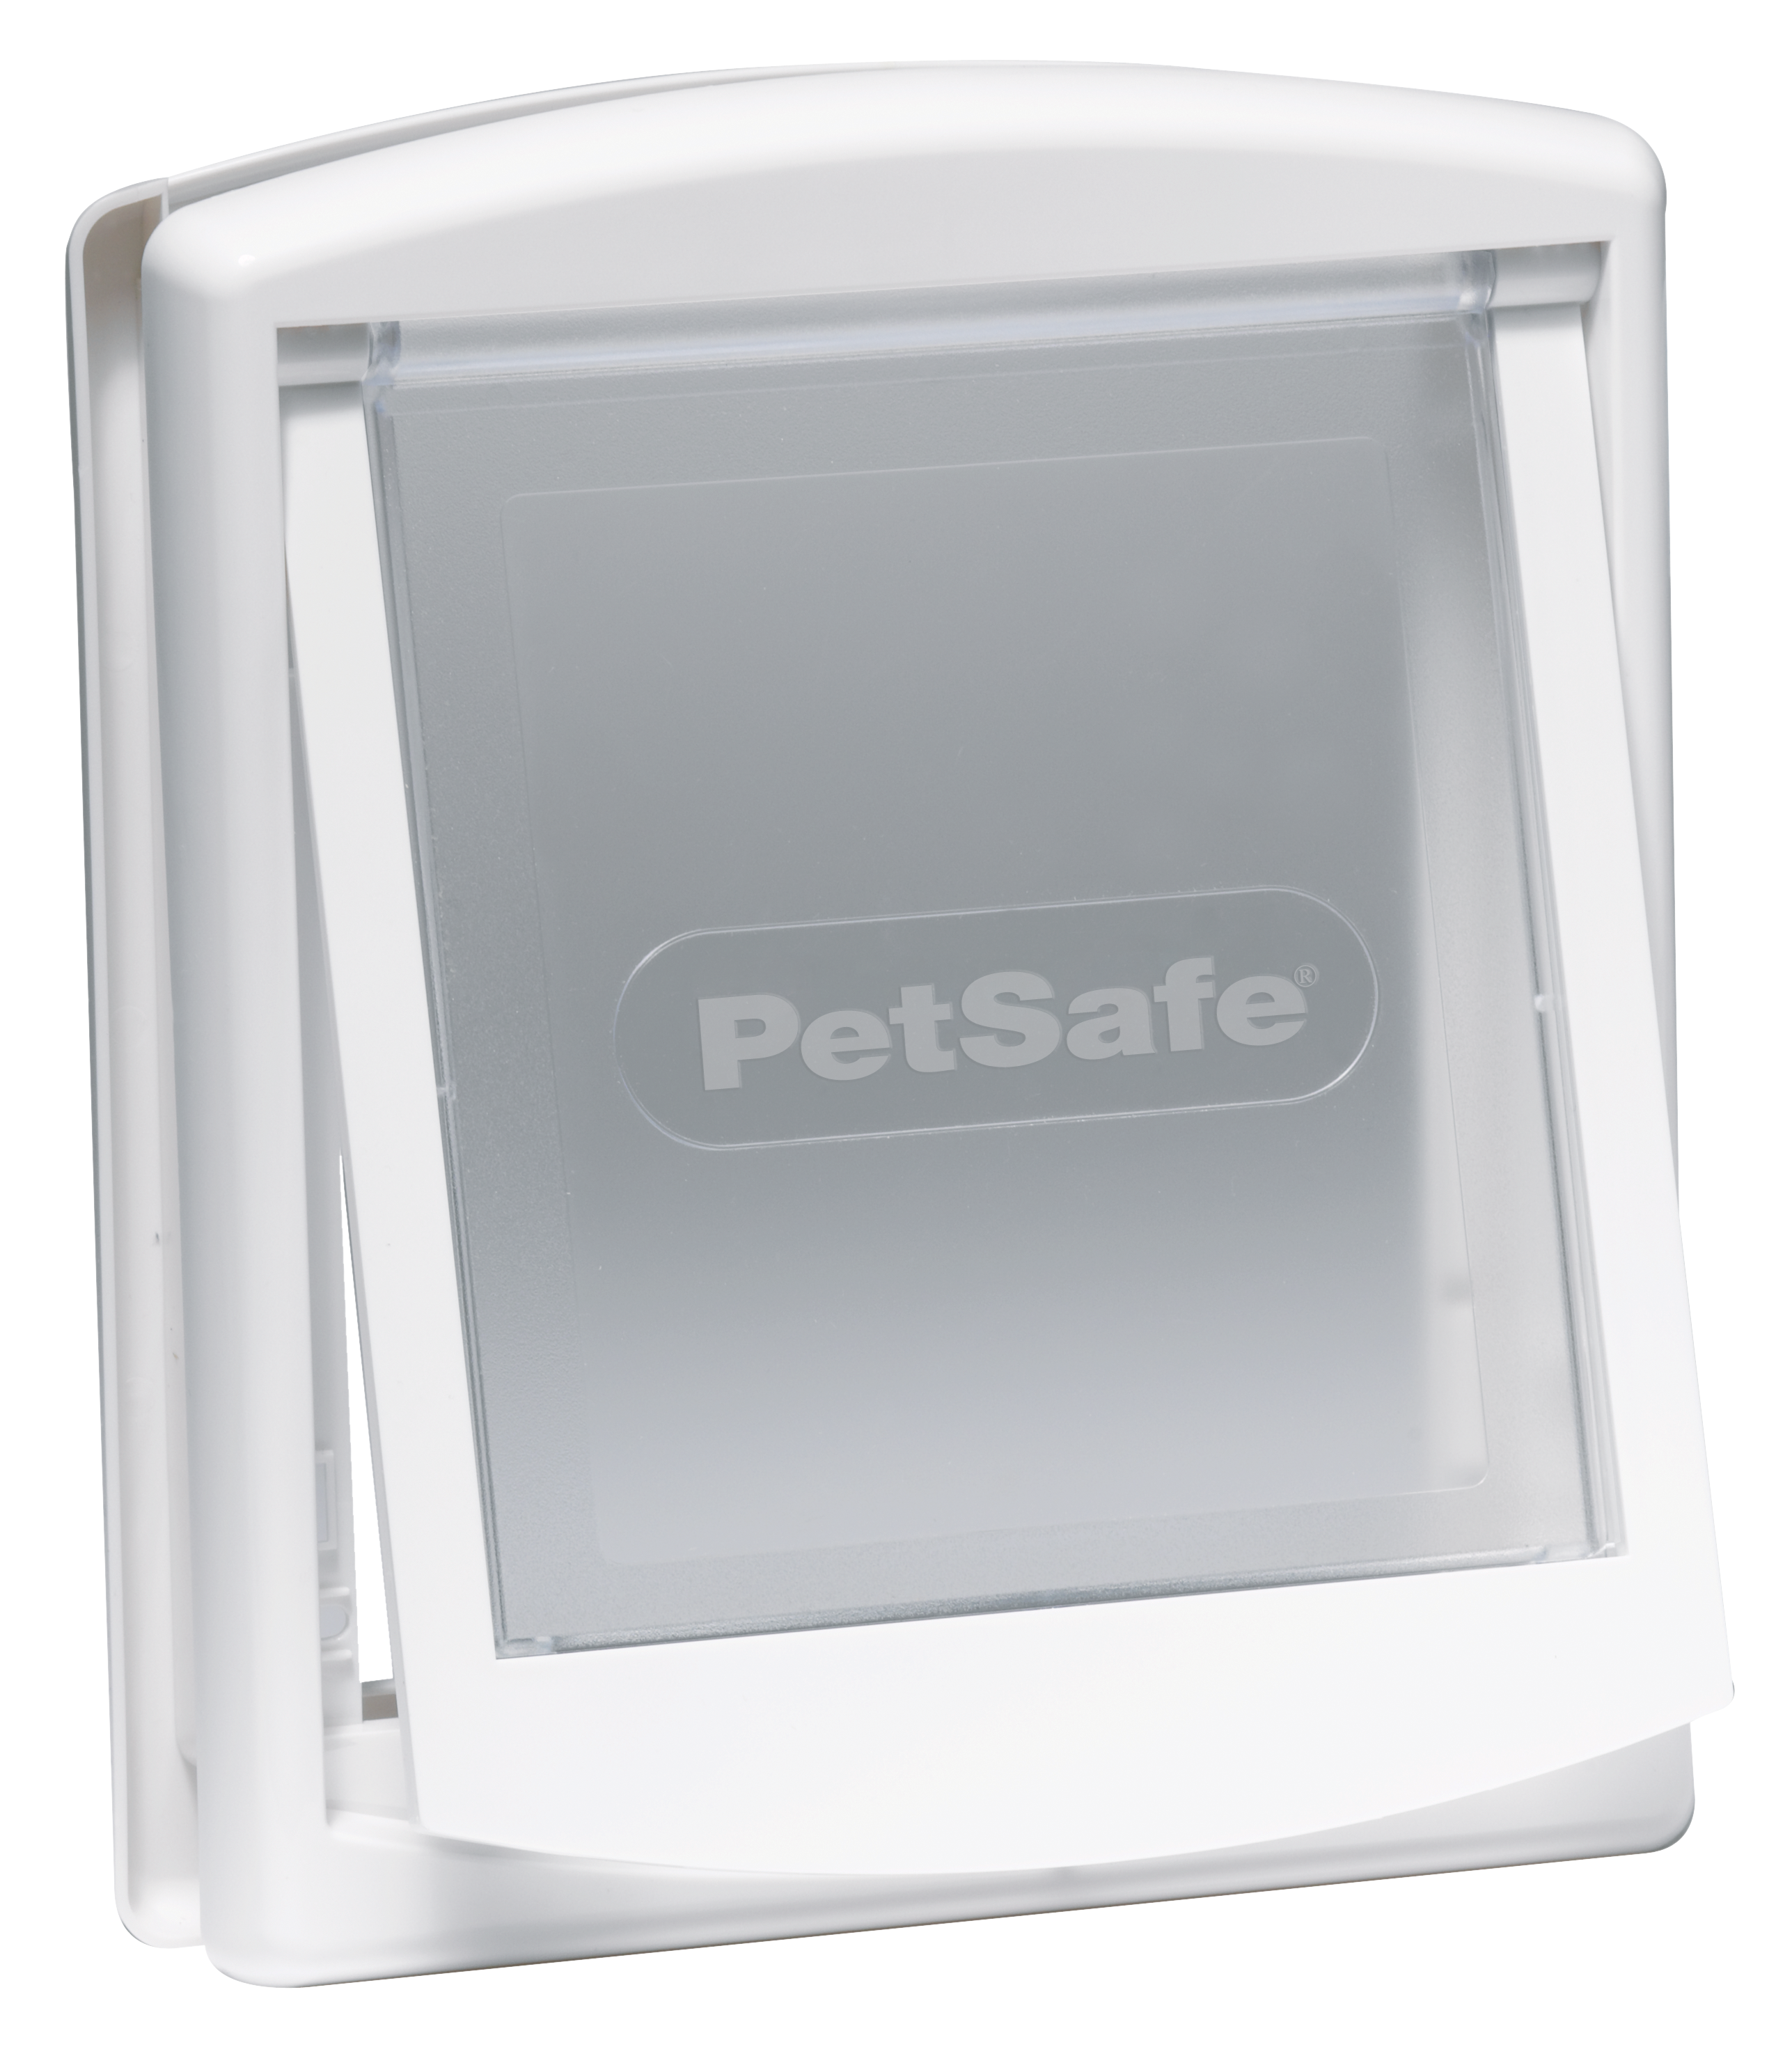 PETSAFE PetSafe® Staywell® Haustiertüre klein, Original Haustiertür mit 2 Verschlussoptionen, weiß